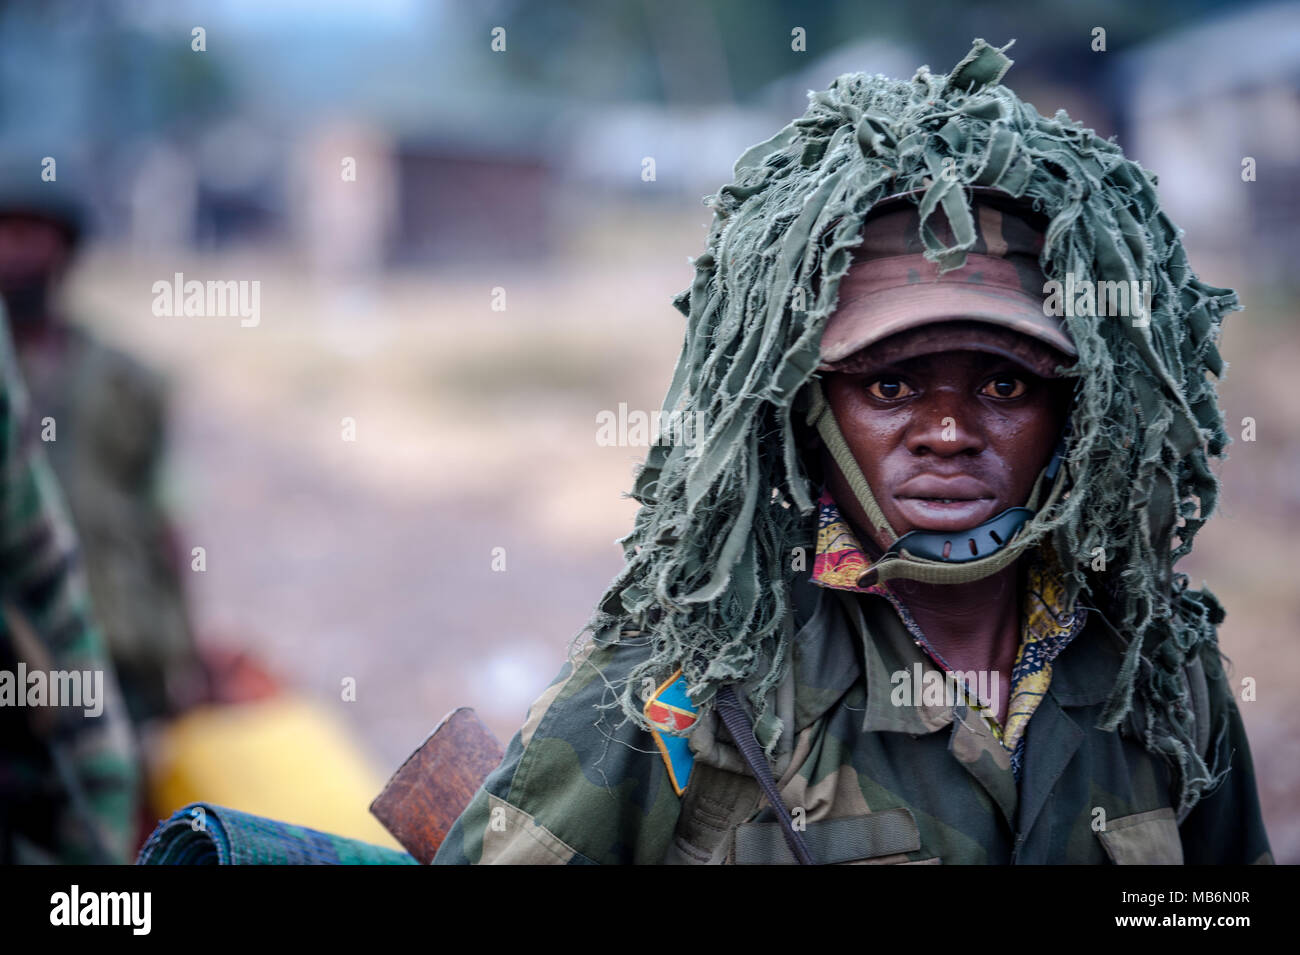 Un soldat du gouvernement de la RDC au cours du conflit avec la milice rwandaise parrainé M23 Banque D'Images